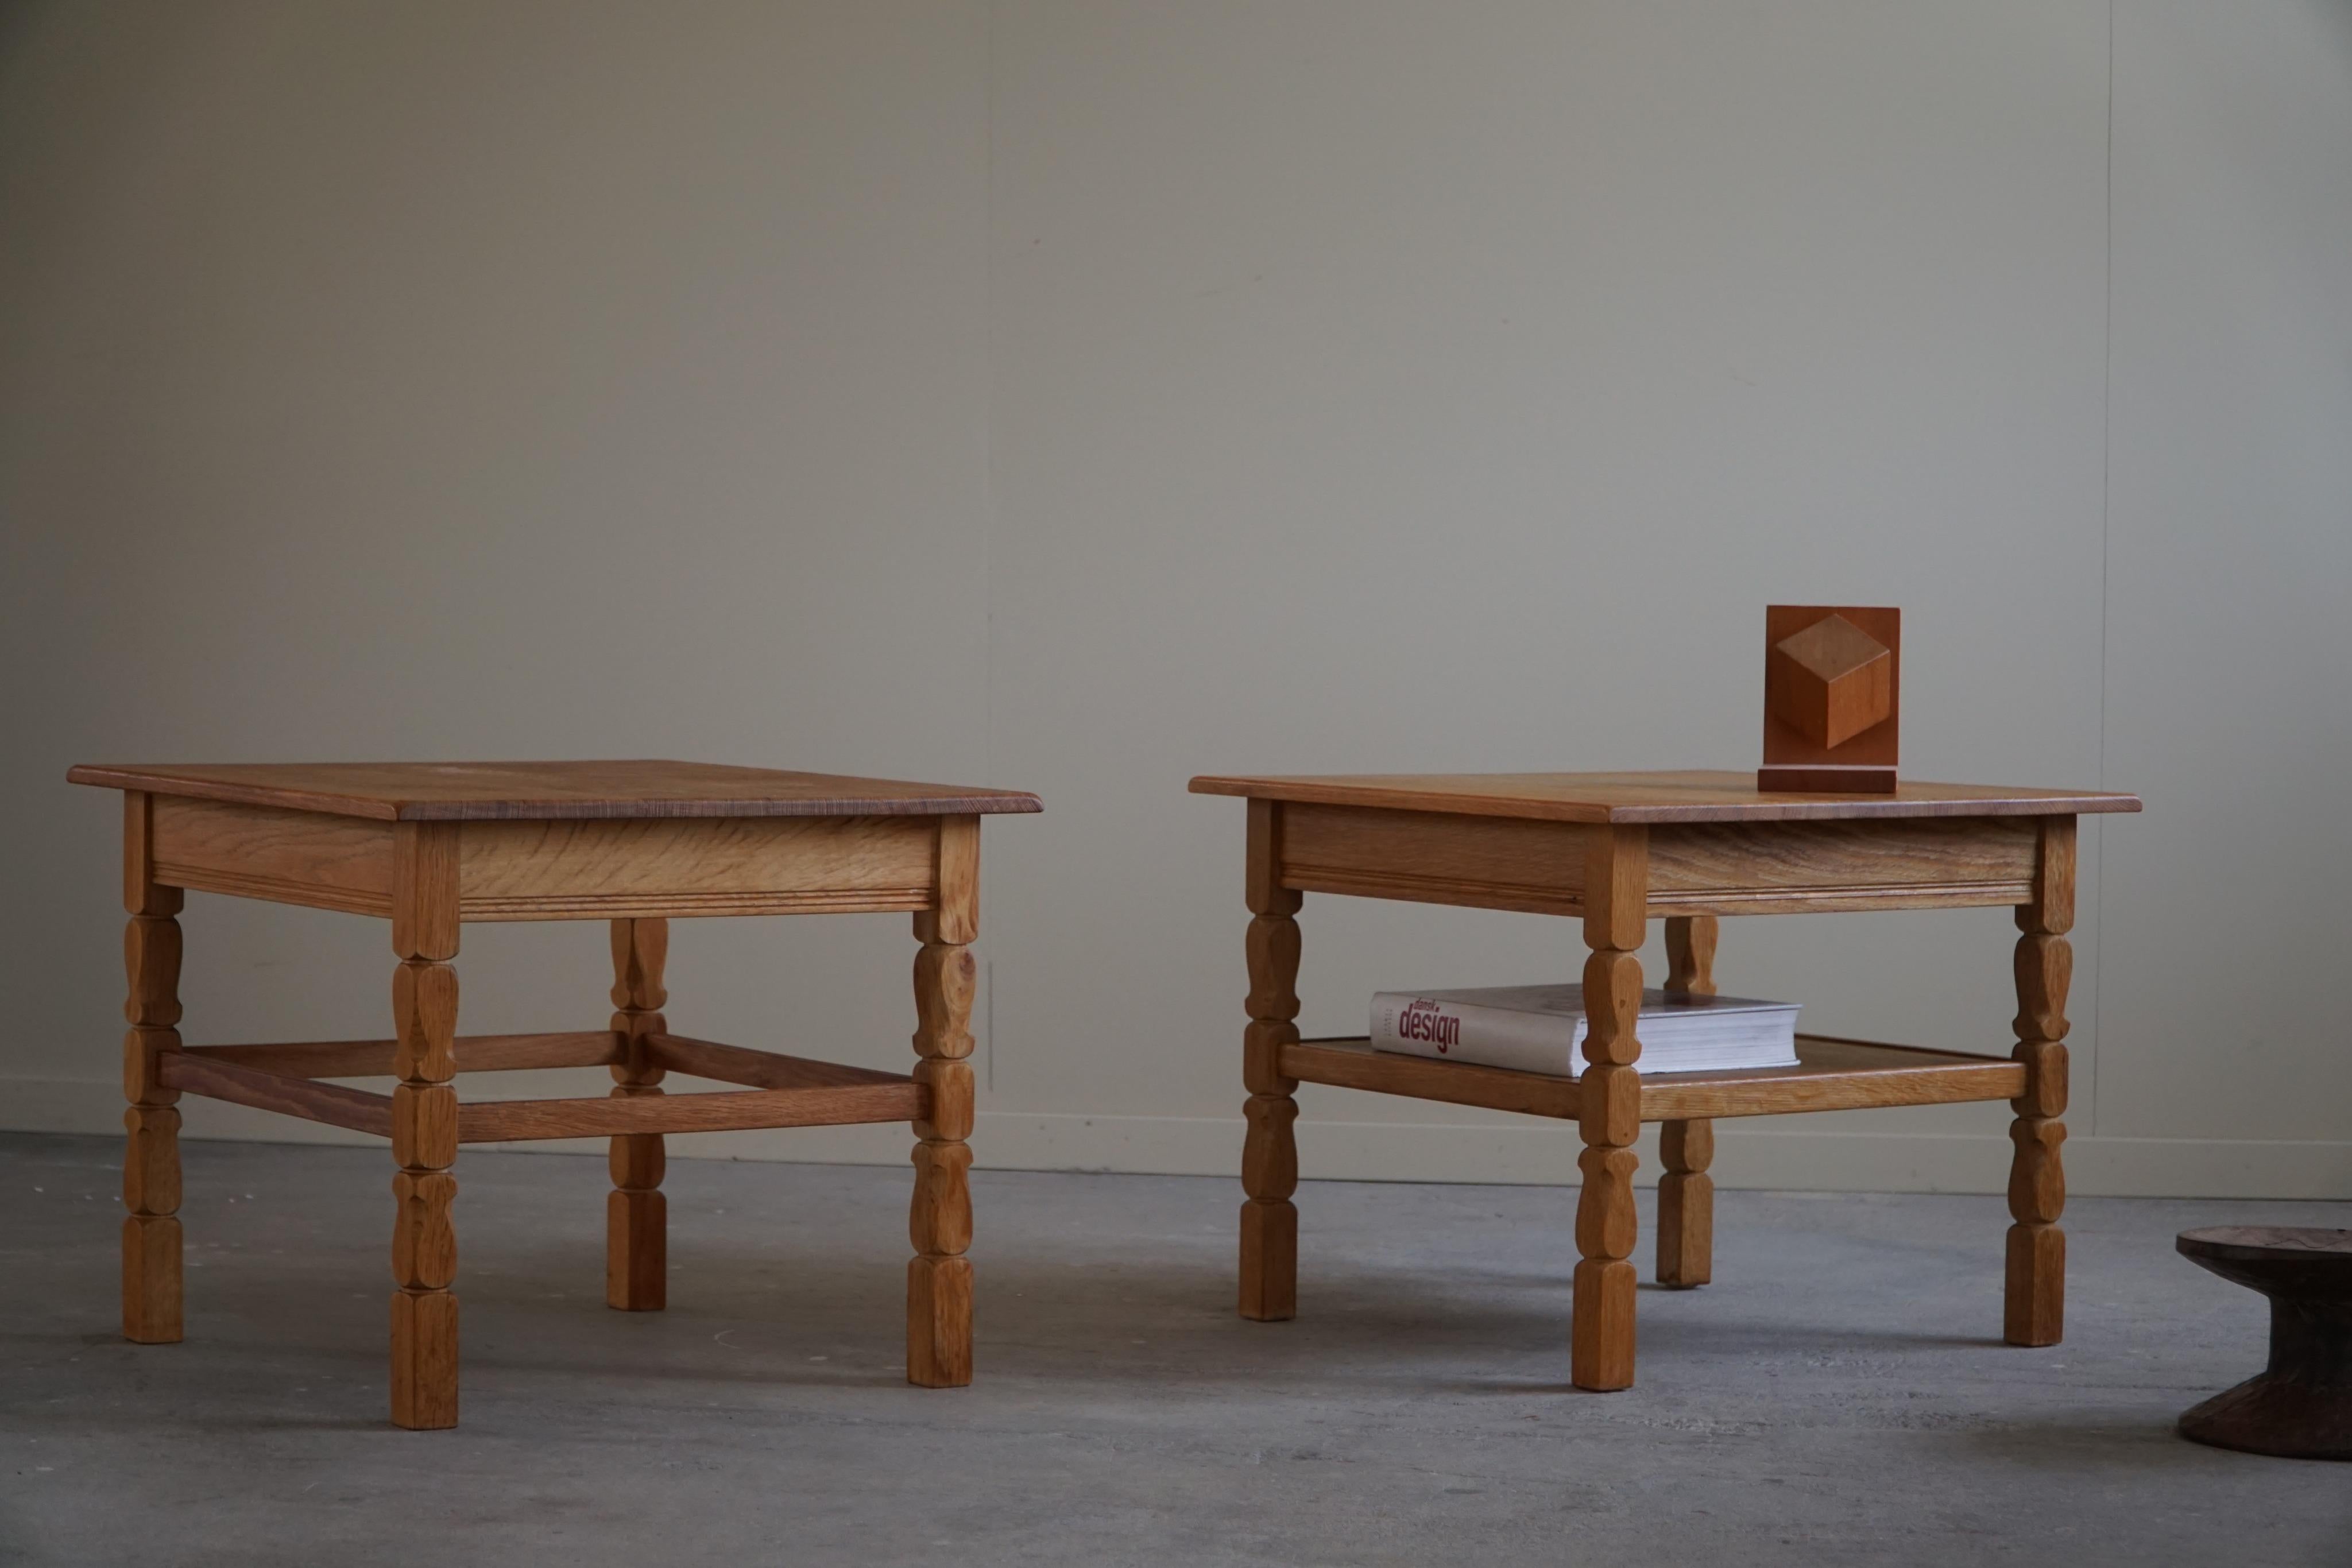 Paire de tables d'appoint carrées en chêne massif. Fabriqué par un ébéniste danois dans les années 1960. 

Ces tables brutalistes sont dotées de pieds incurvés et d'une grande qualité de fabrication.
Légers signes d'usure en surface.
Ces jolies